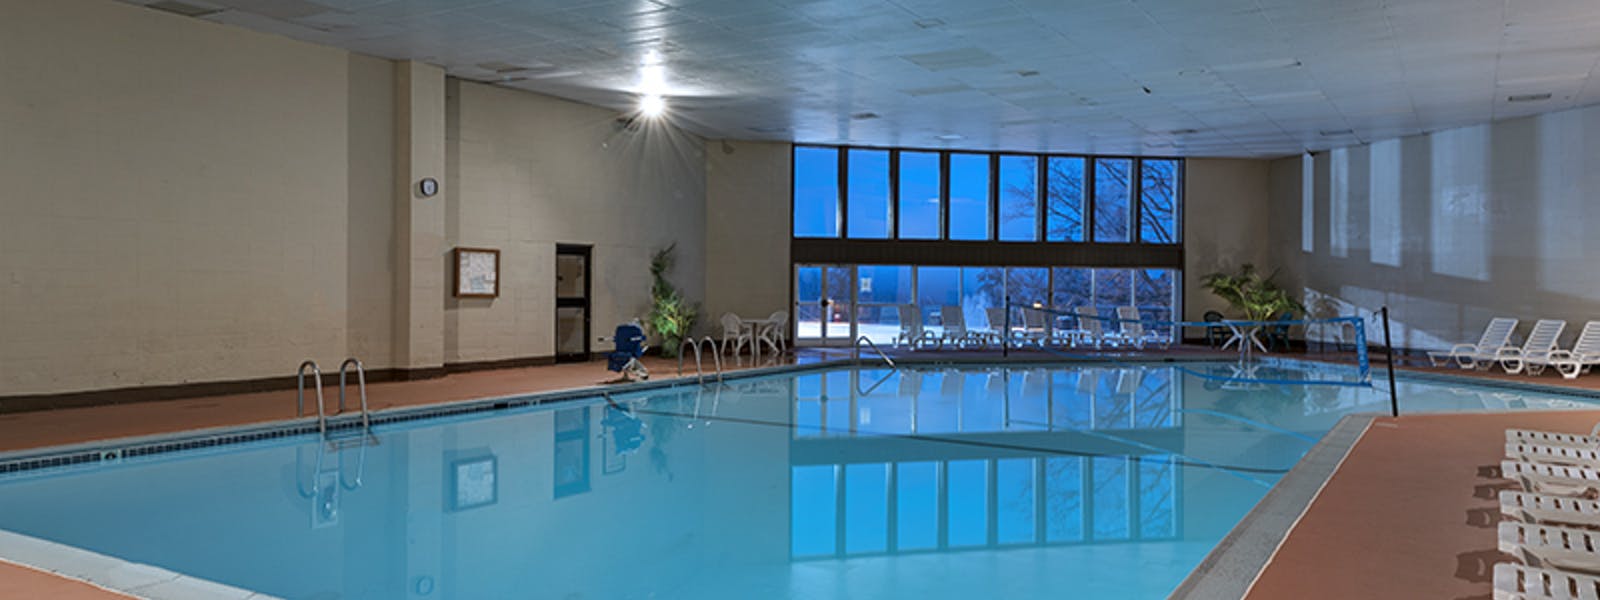 Mountain Laurel Indoor Pool